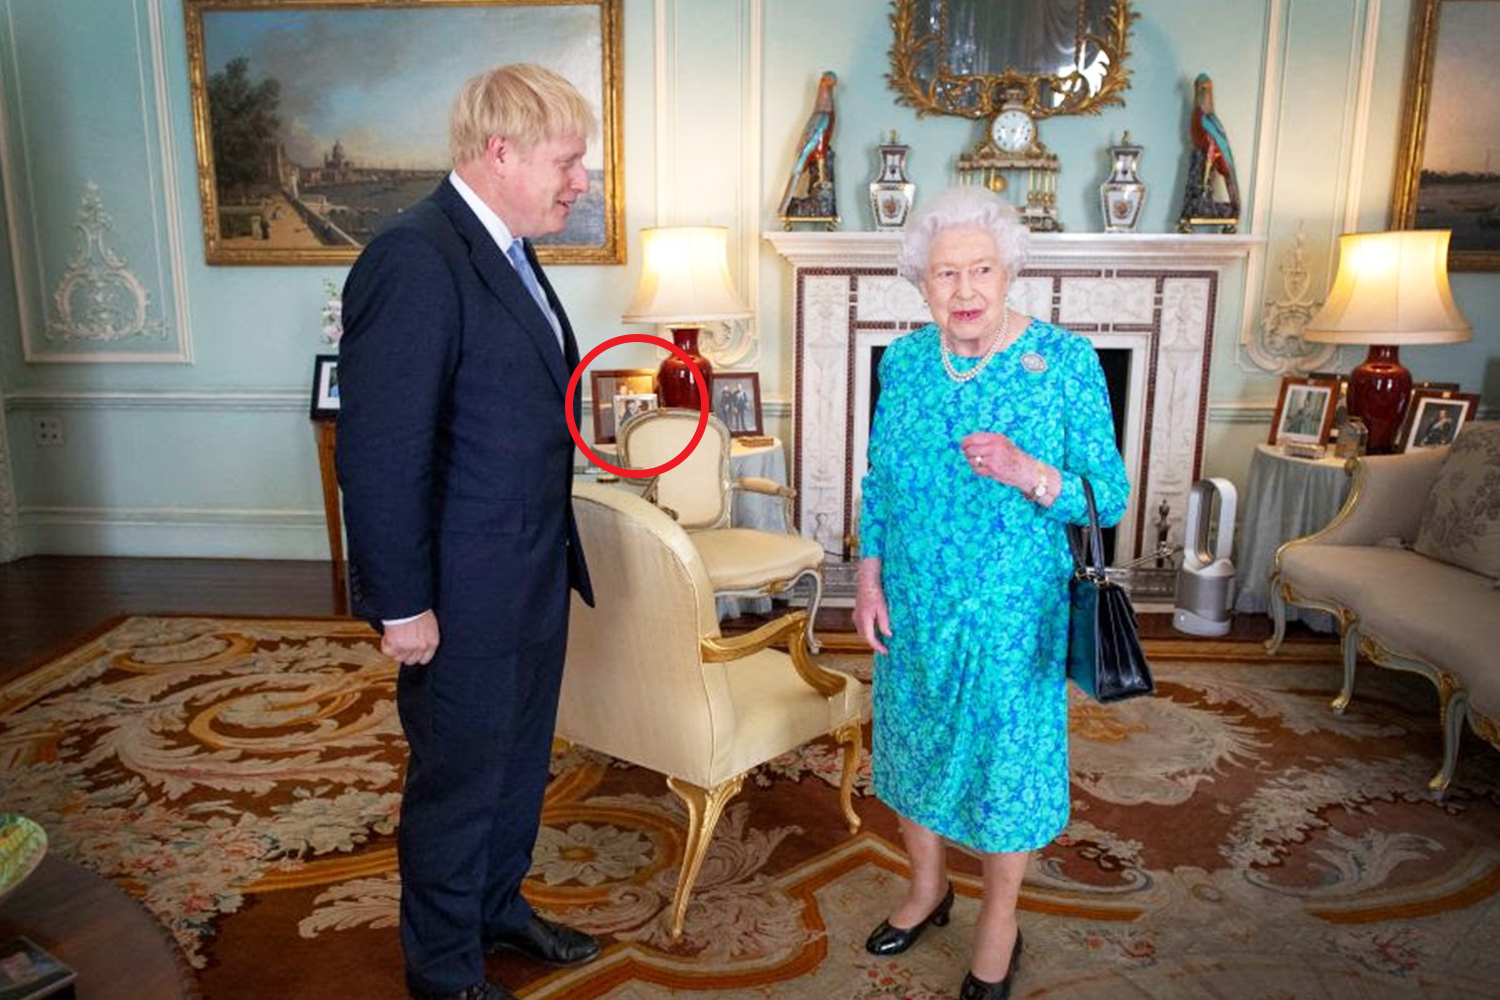  Поклонники заметили, что фотография Сассекса находится перед фотографией Кембриджа на столе королевы в Букингемском дворце